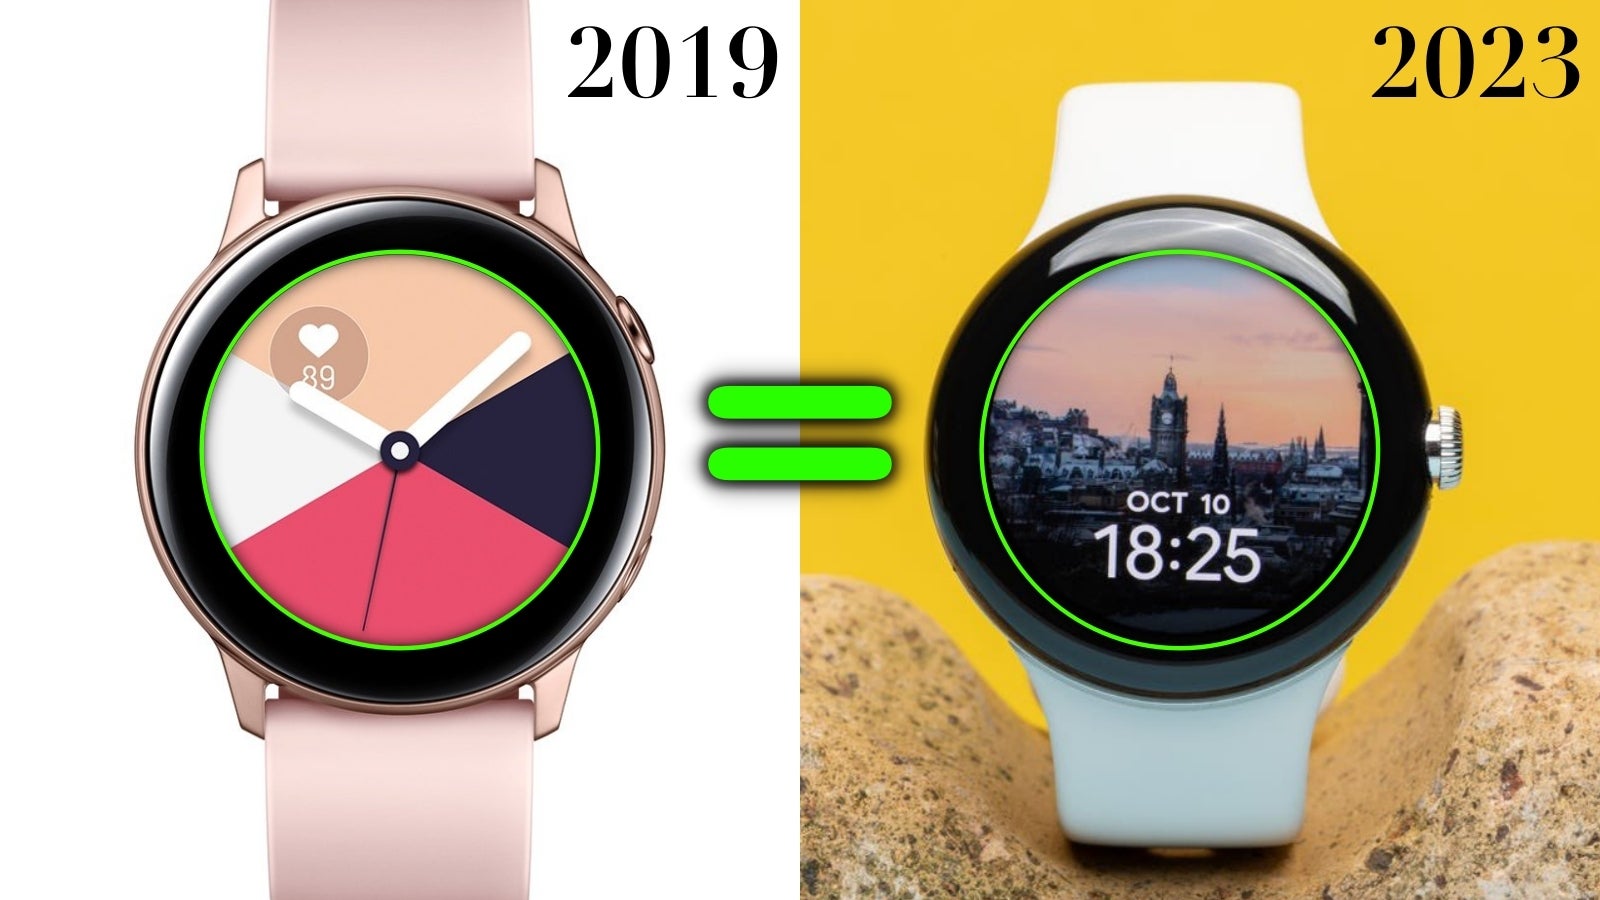 Meu Pixel Watch 2 2023 tem o mesmo tamanho de moldura do Galaxy Watch Active 2019, e isso... não é legal. - Pixel Watch 3: Google quer que eu faça a “transição” para a pessoa (smartwatch) que me recuso a ser!